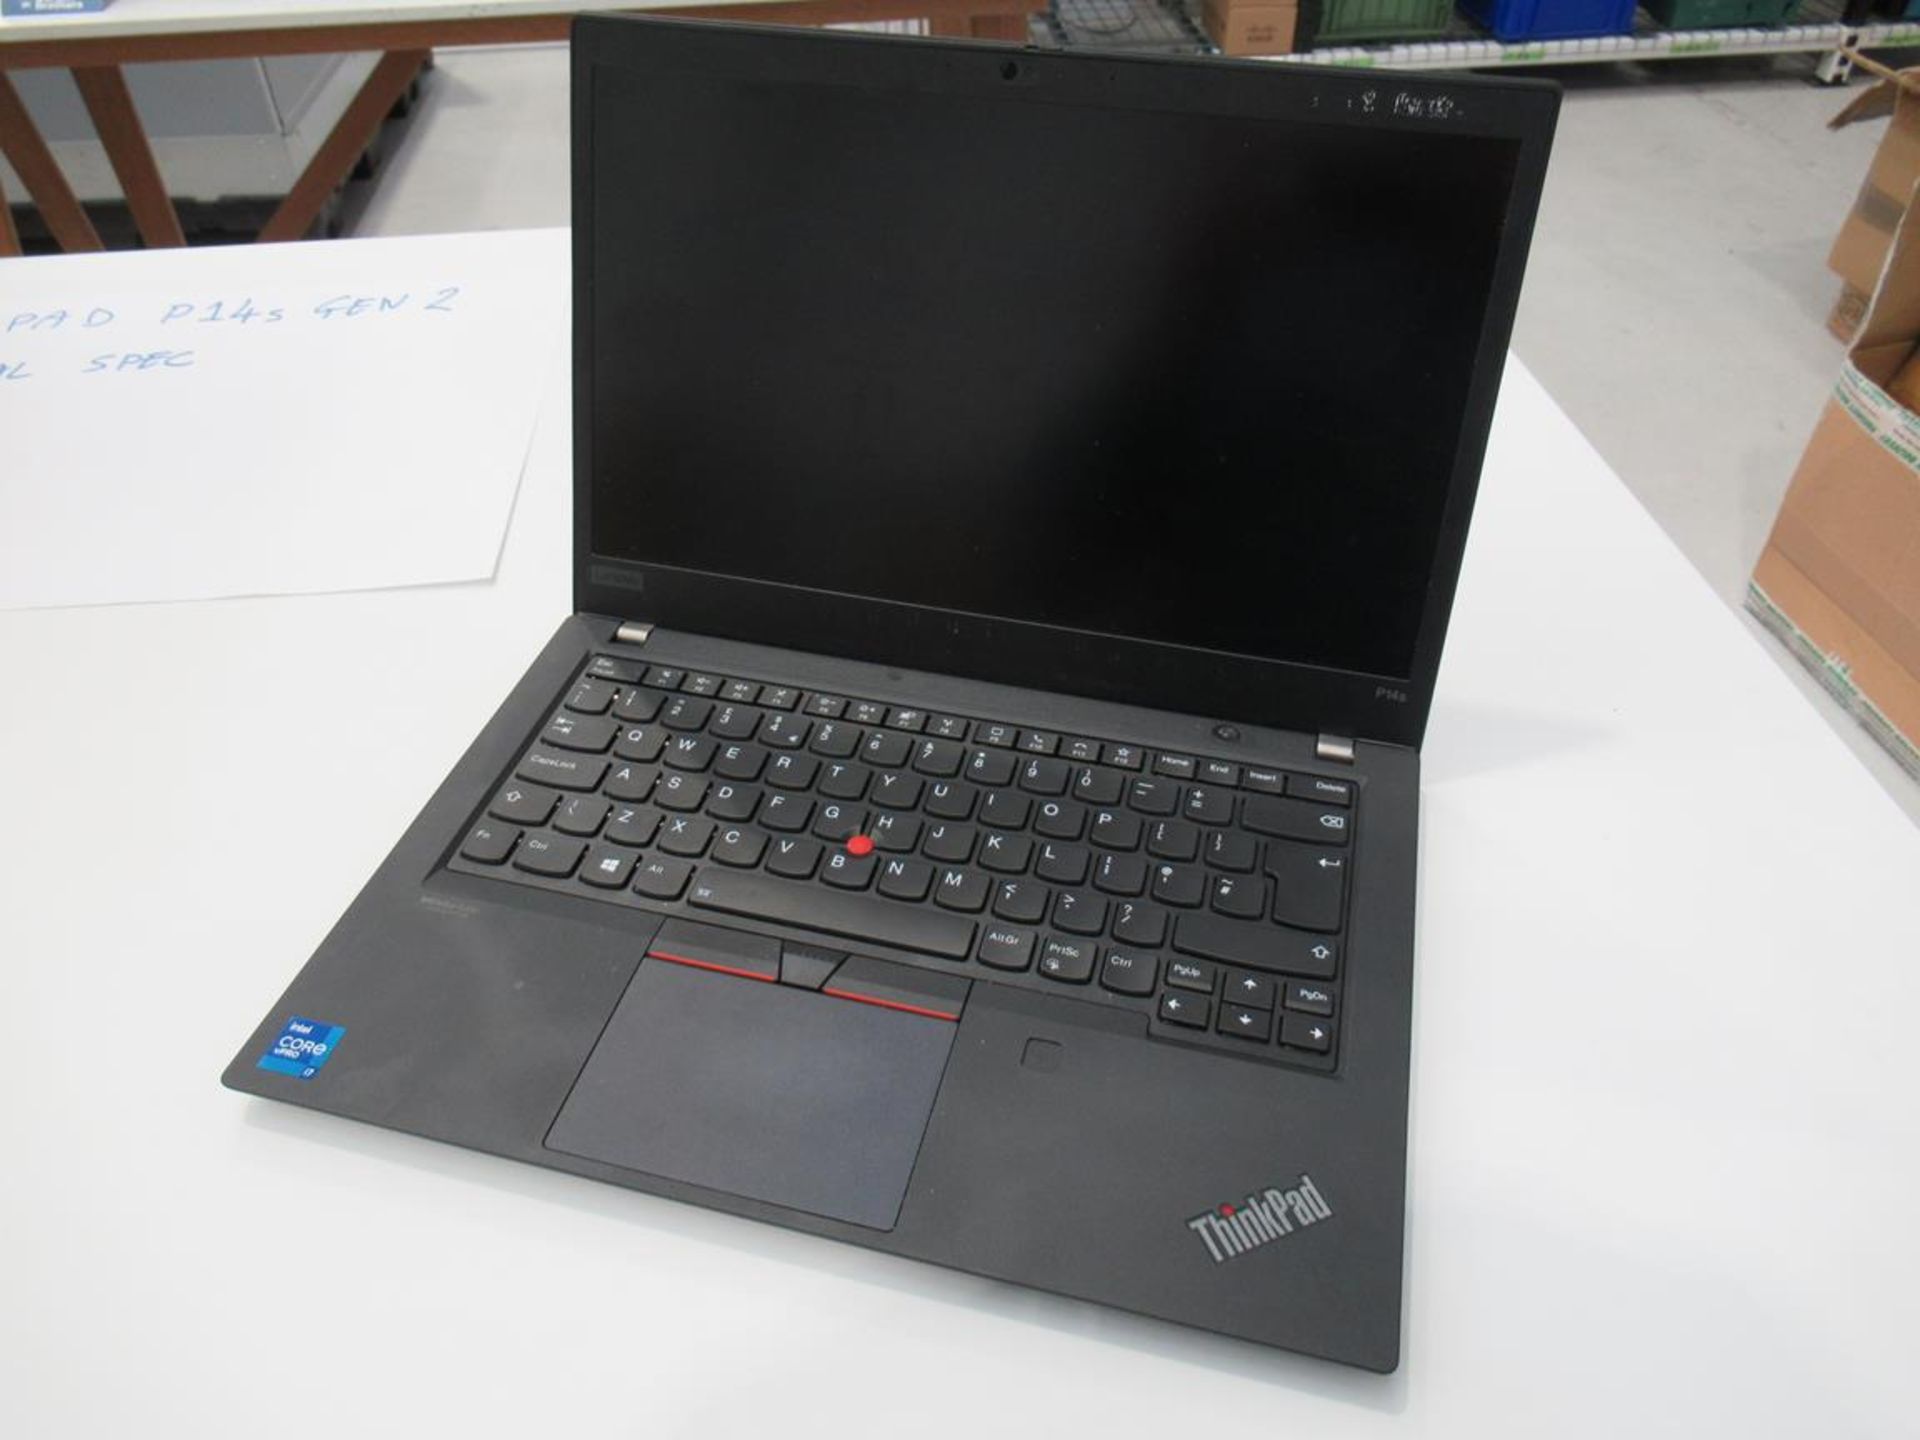 ThinkPad, P14s Gen 2 standard specification